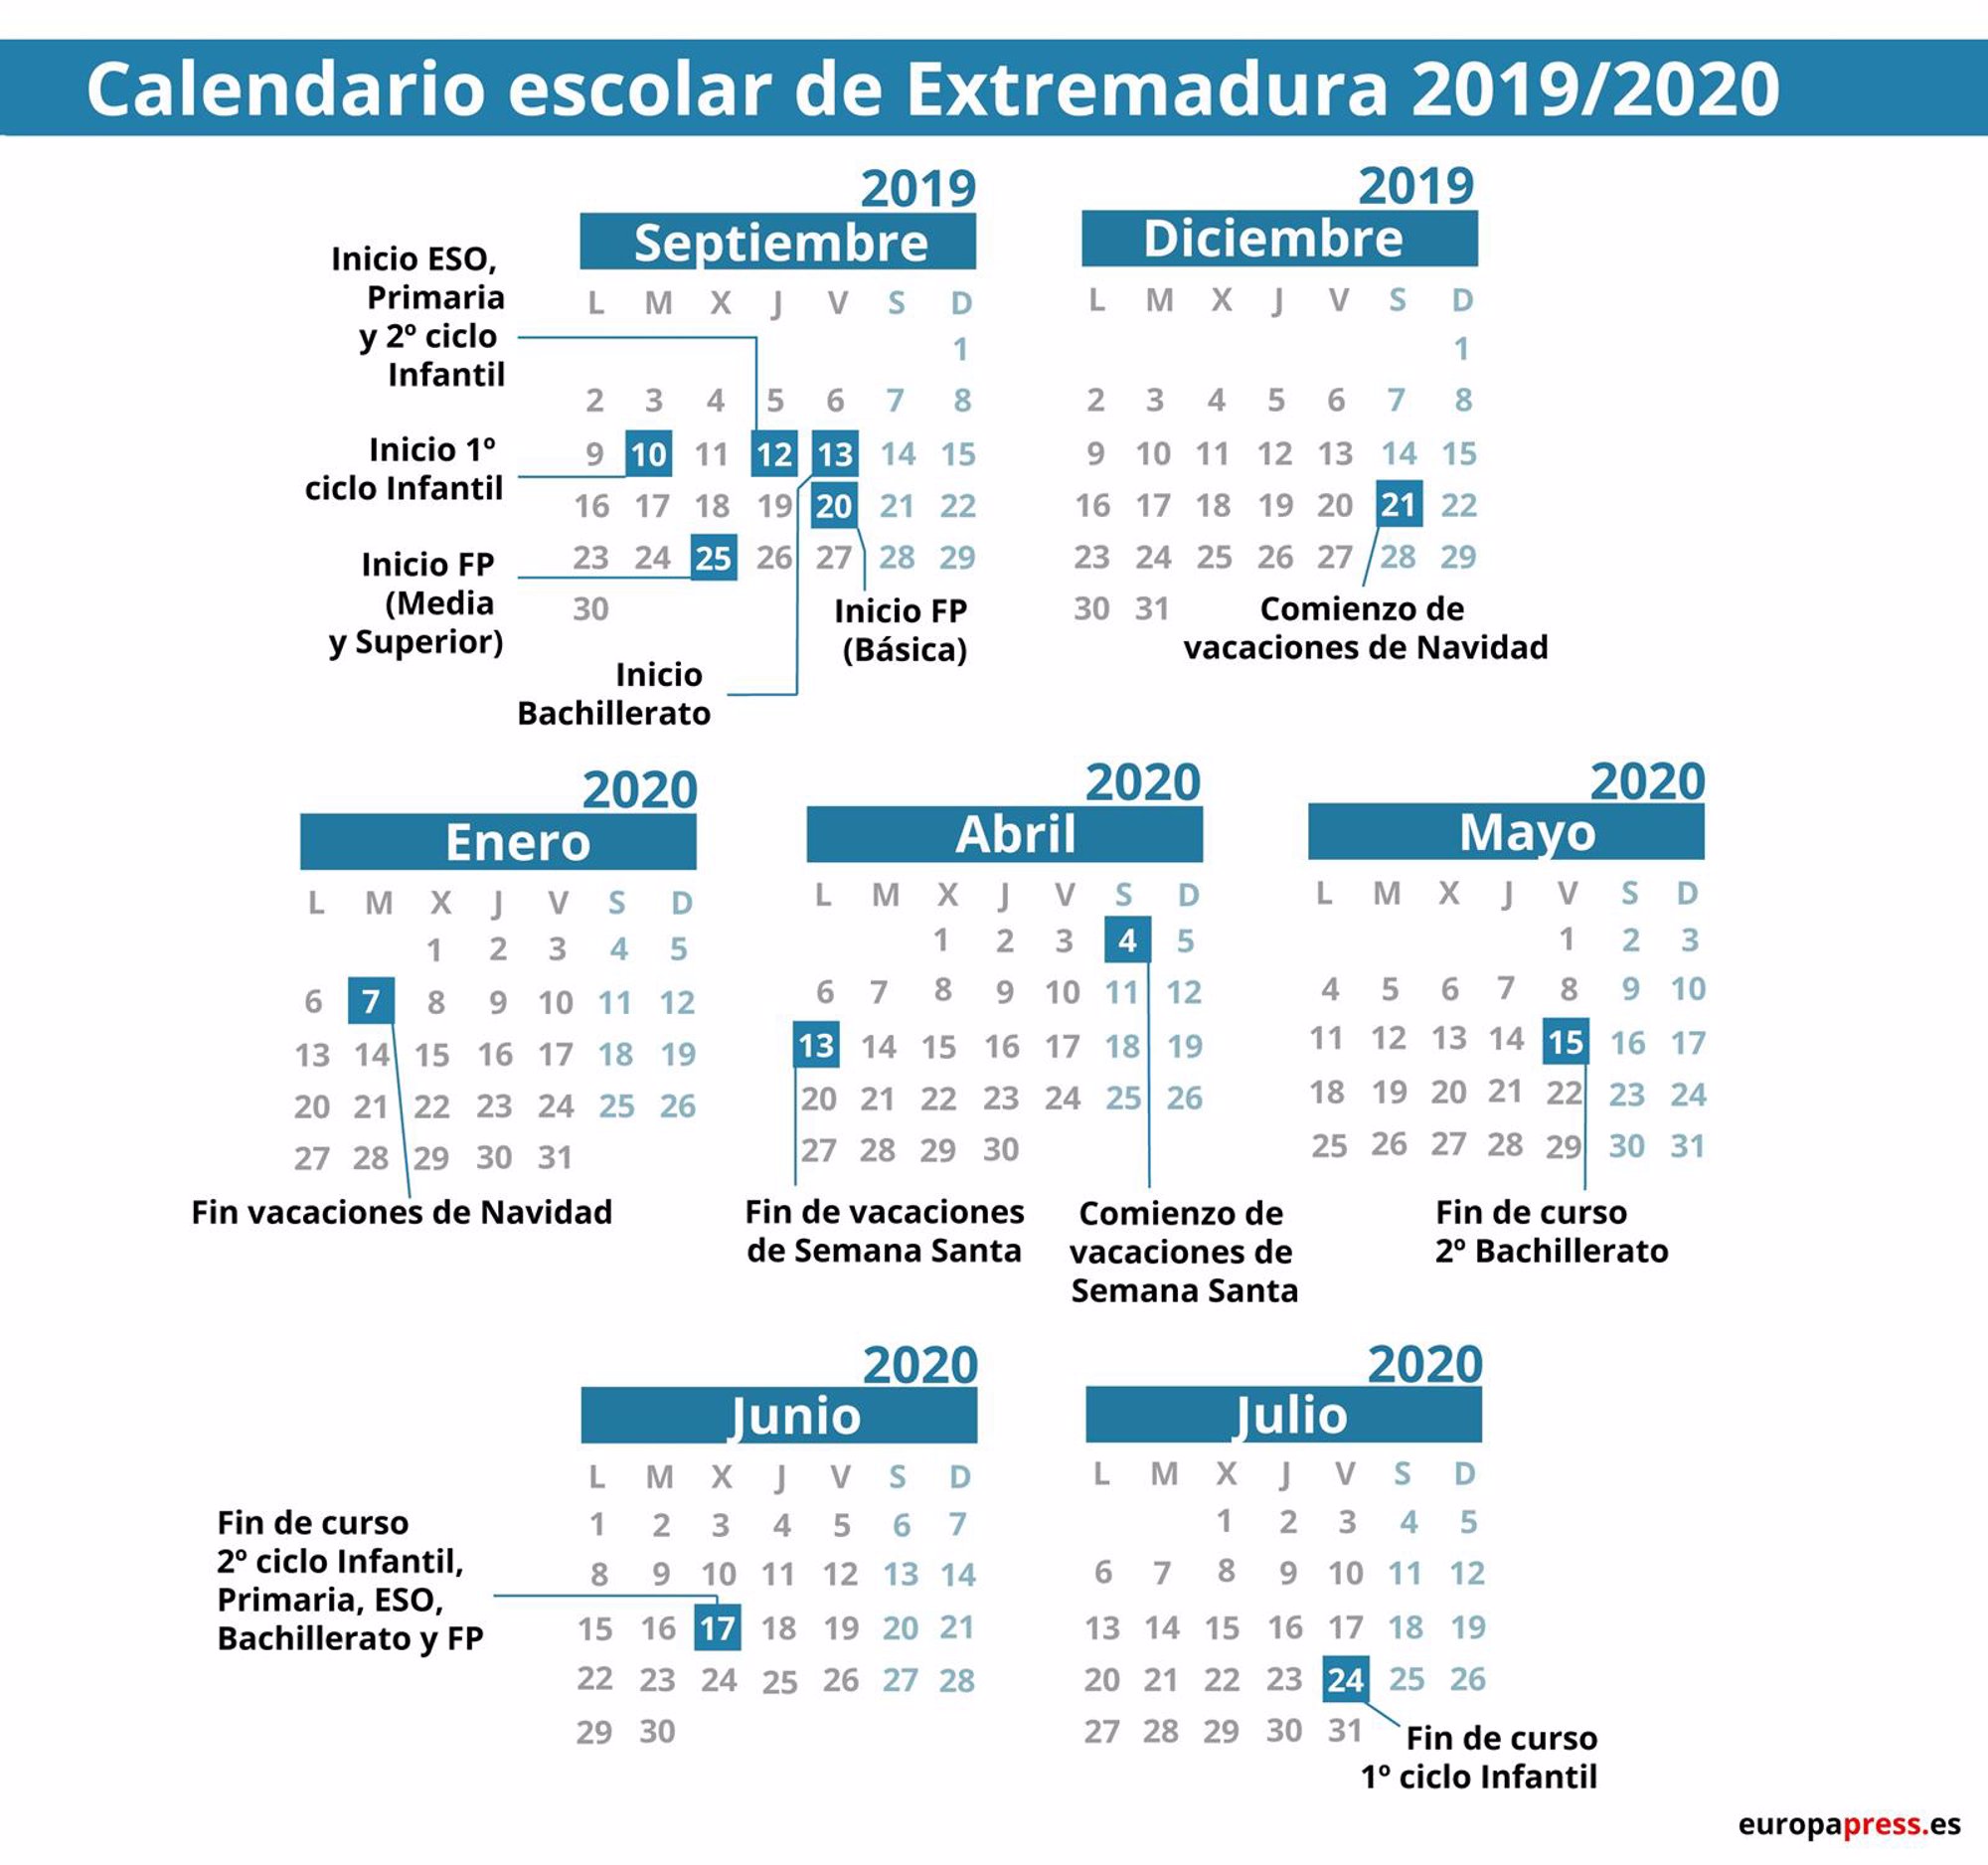 Roble Agente Amanecer Calendario escolar 2019/2020 por comunidades: Navidad, Semana Santa y  vacaciones de verano